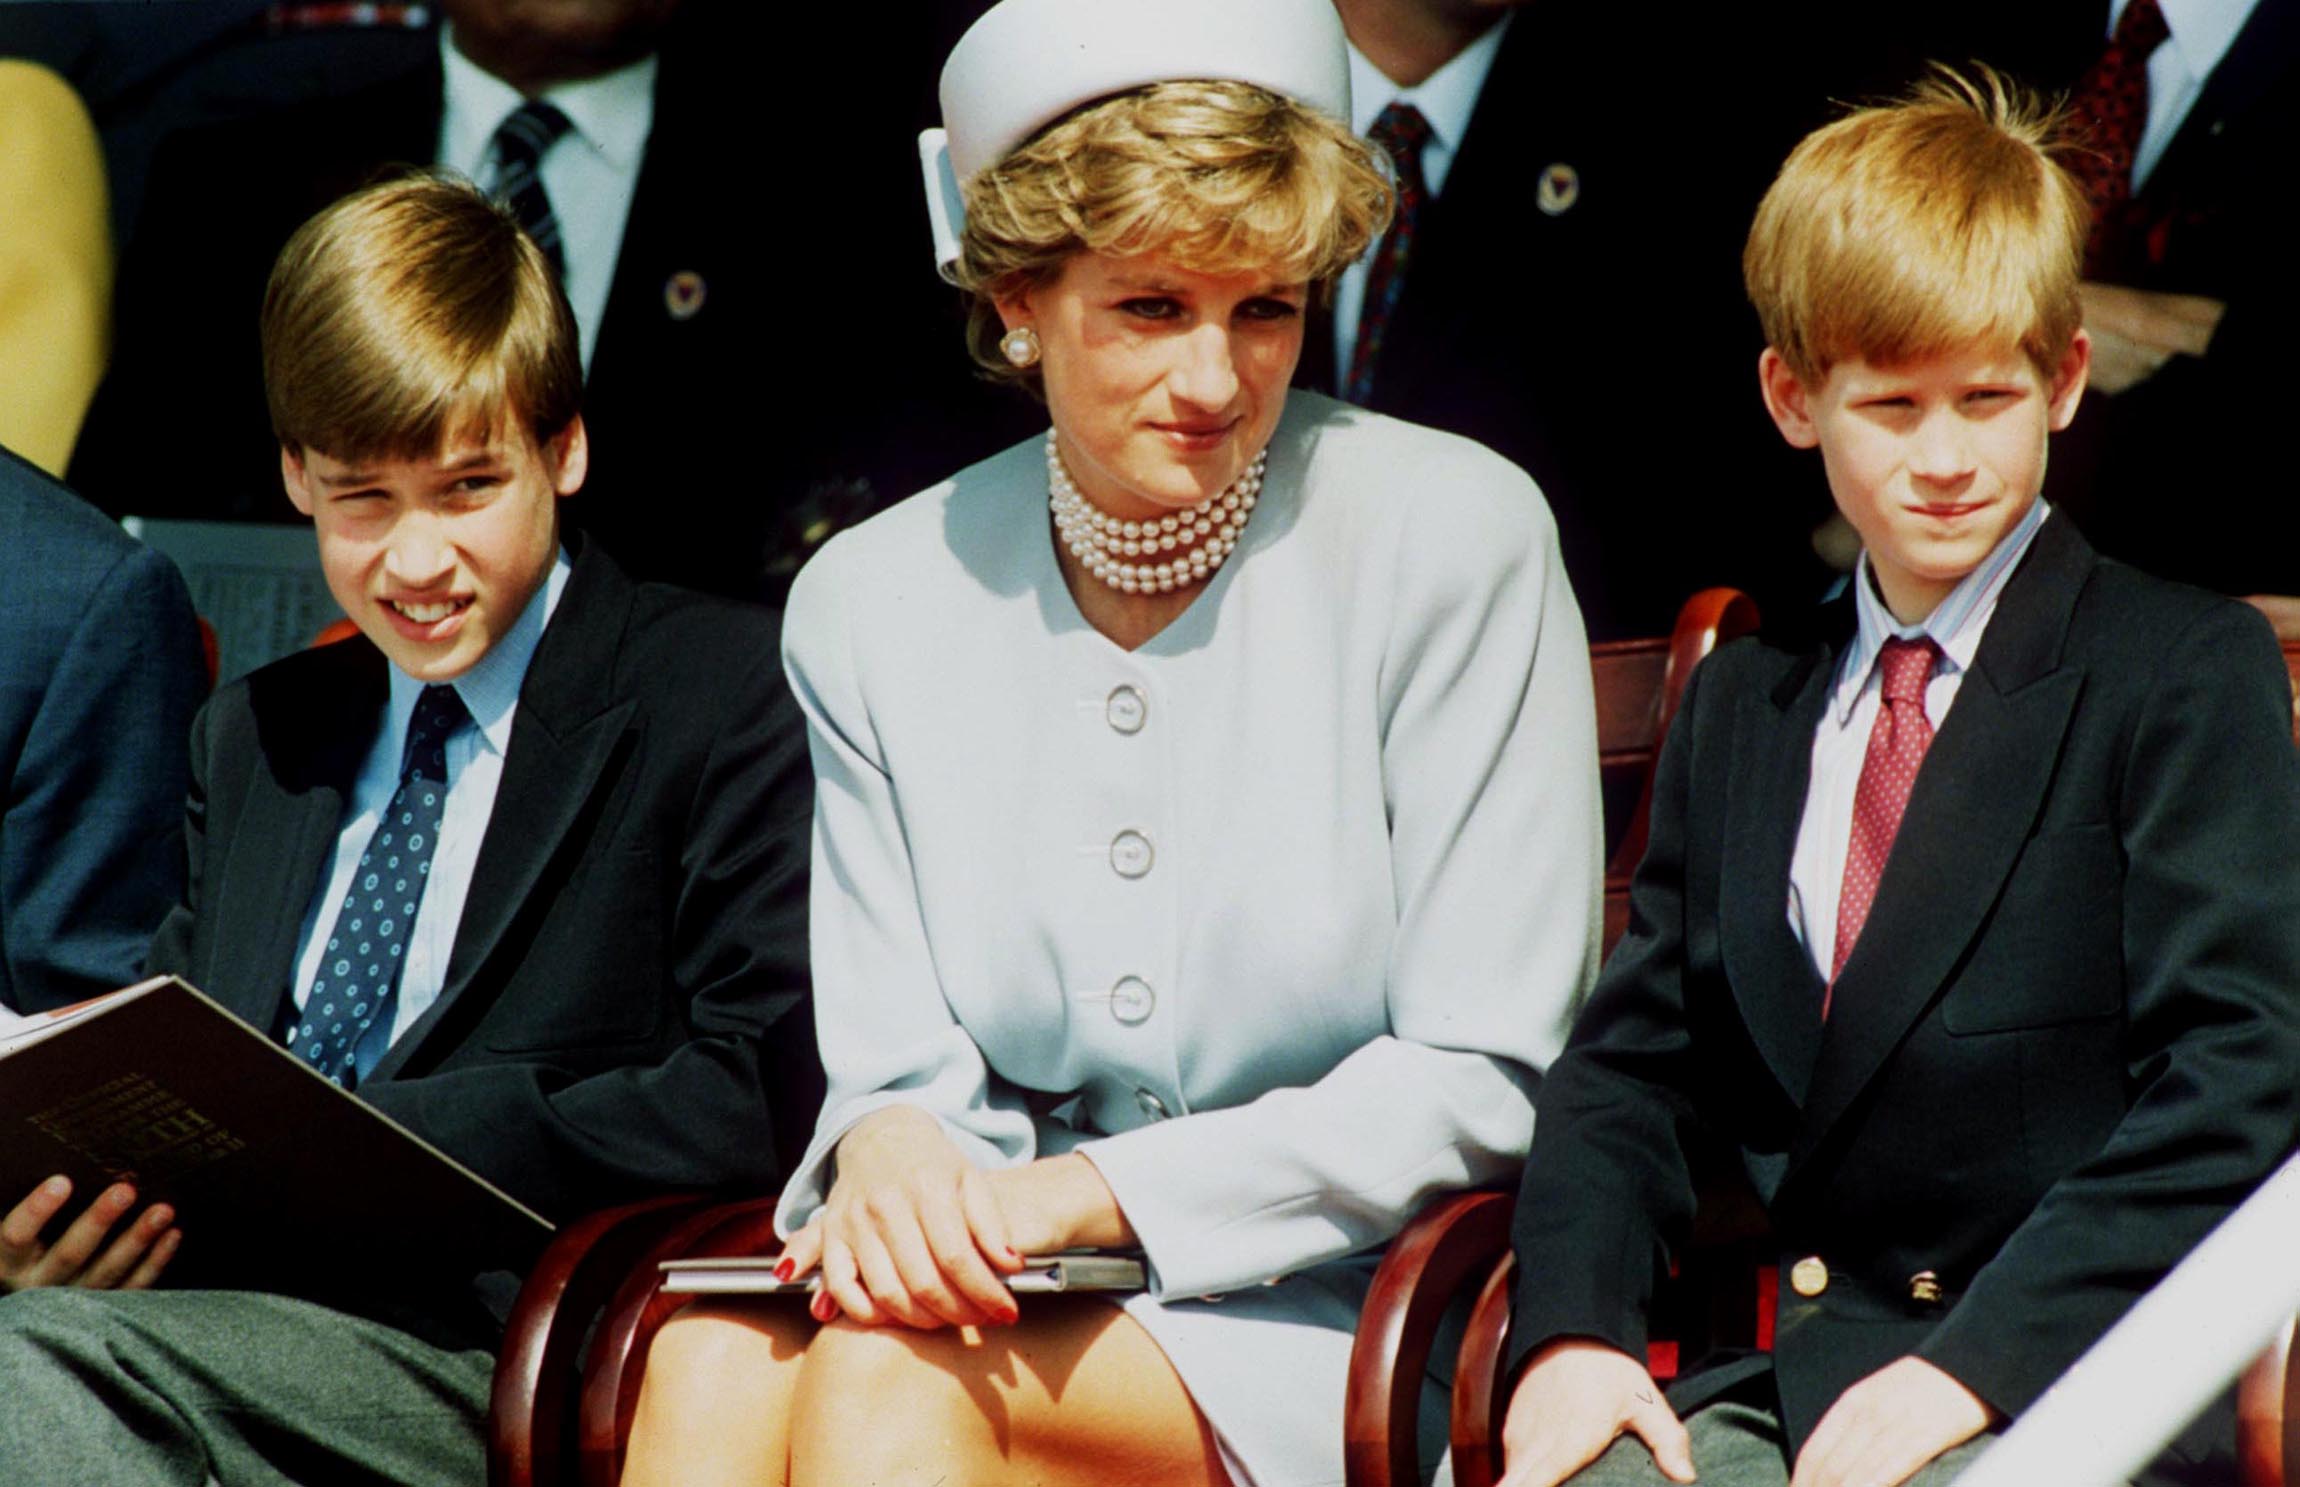 La princesa Diana fotografiada con sus hijos, el príncipe William y el príncipe Harry, asistiendo al Servicio de Recuerdo de los Jefes de Estado VE en Hyde Park el 7 de mayo de 1995 en Londres, Inglaterra. | Foto: Getty Images